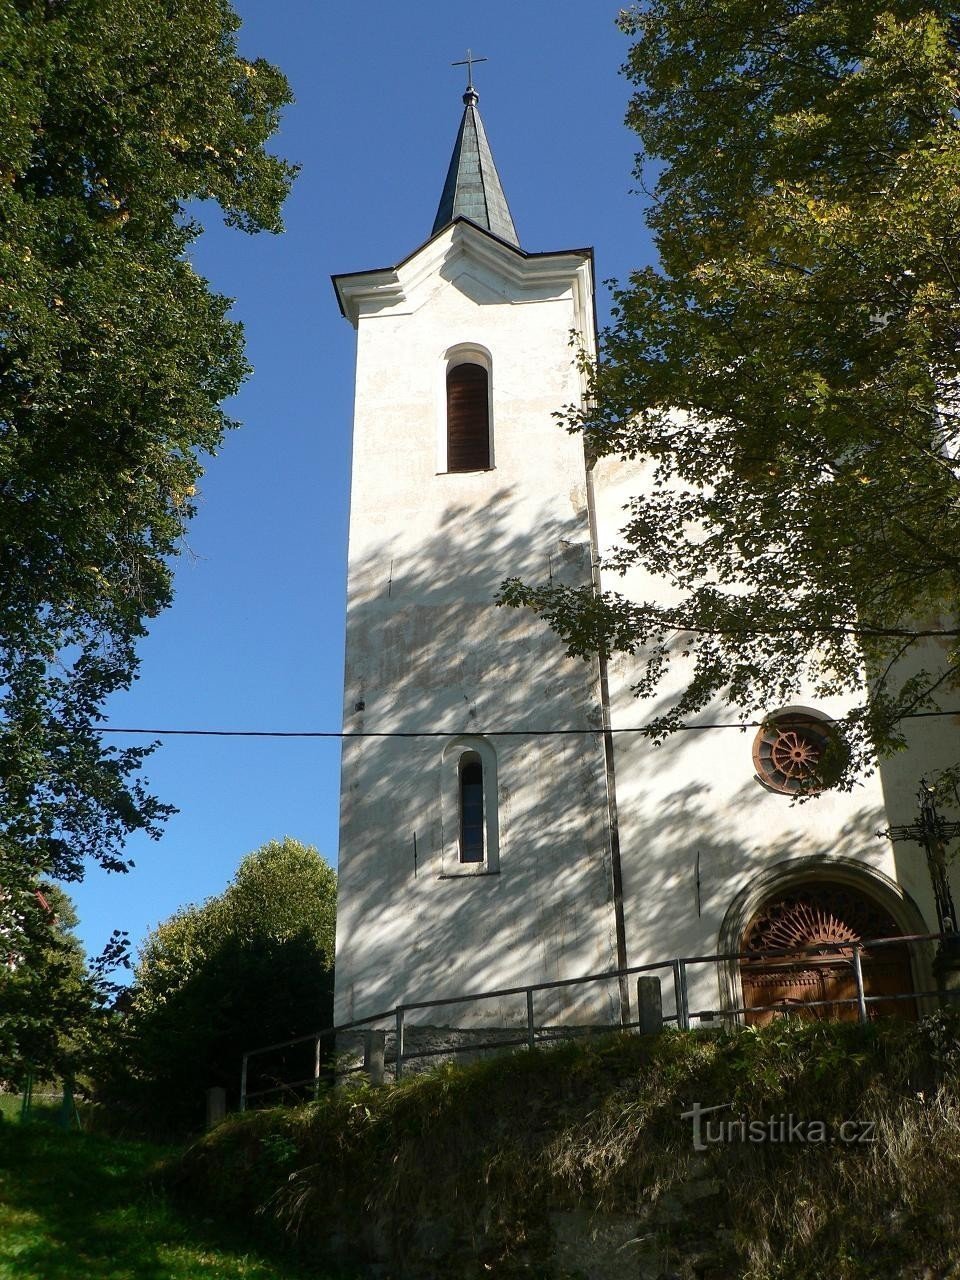 P. マリー スニェジュネ教会の塔、カシュペルスケー ホリ